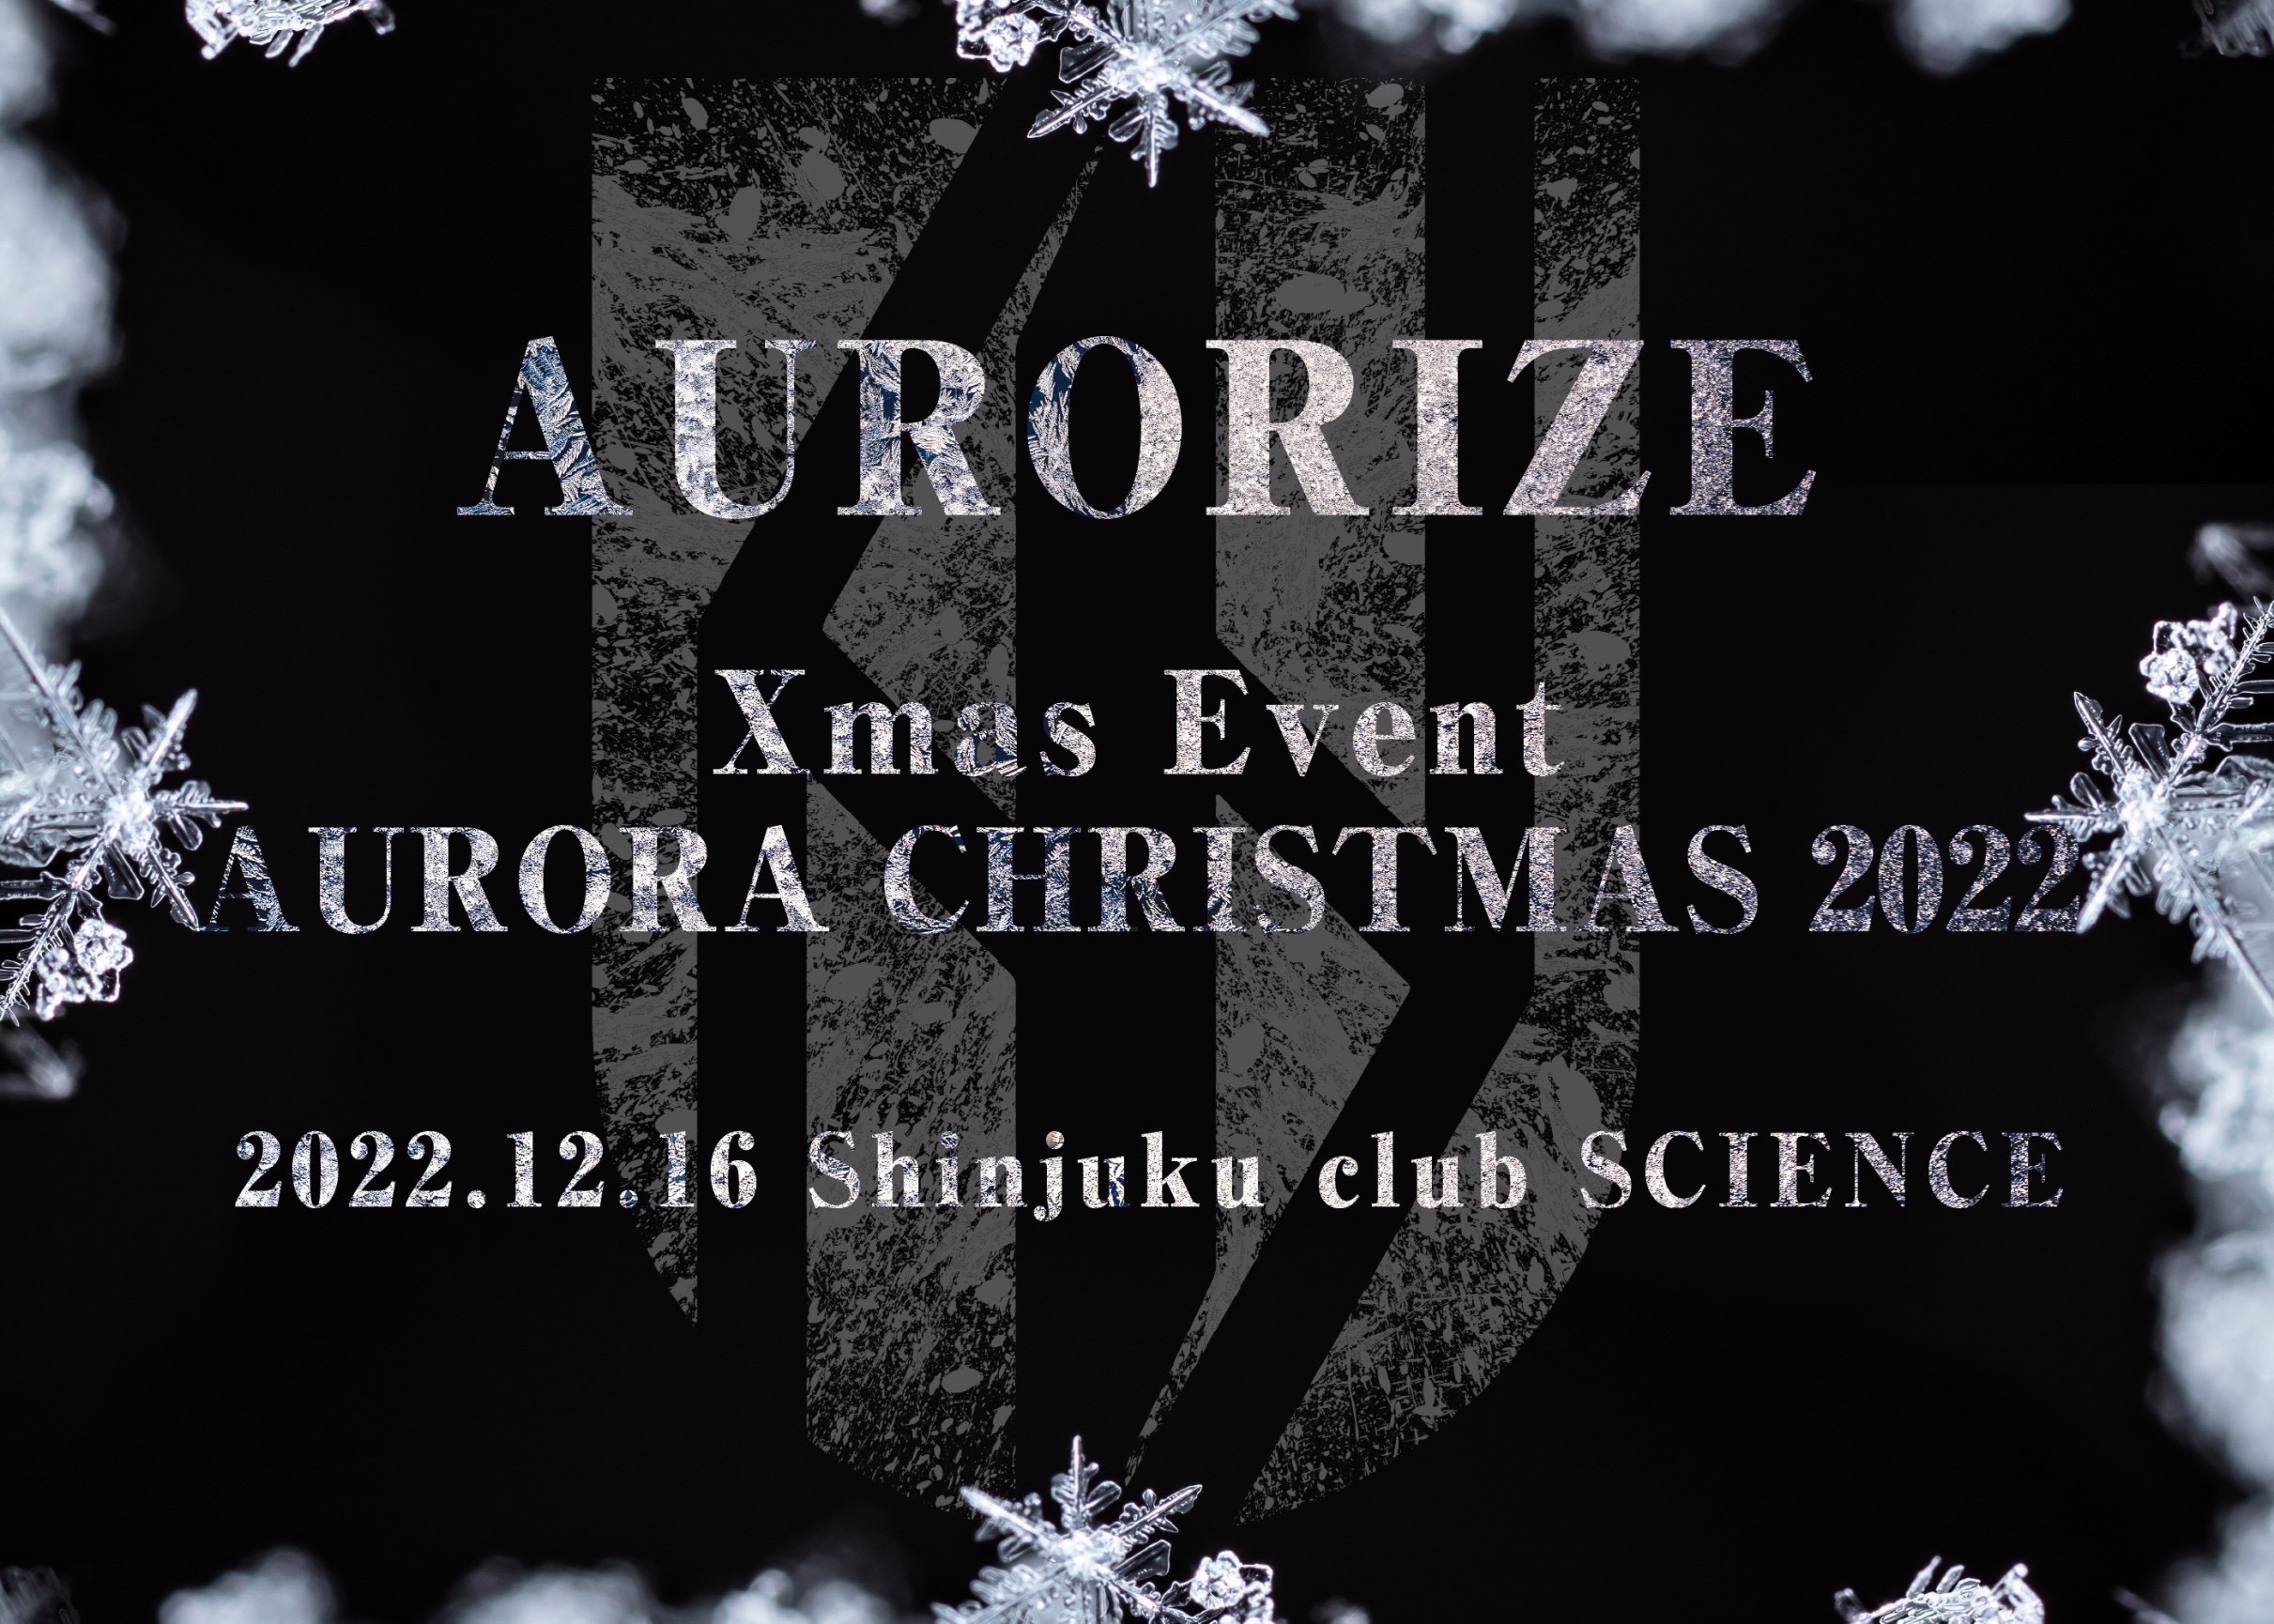 AURORIZE Xmas Event「AURORA CHRISTMAS 2022」